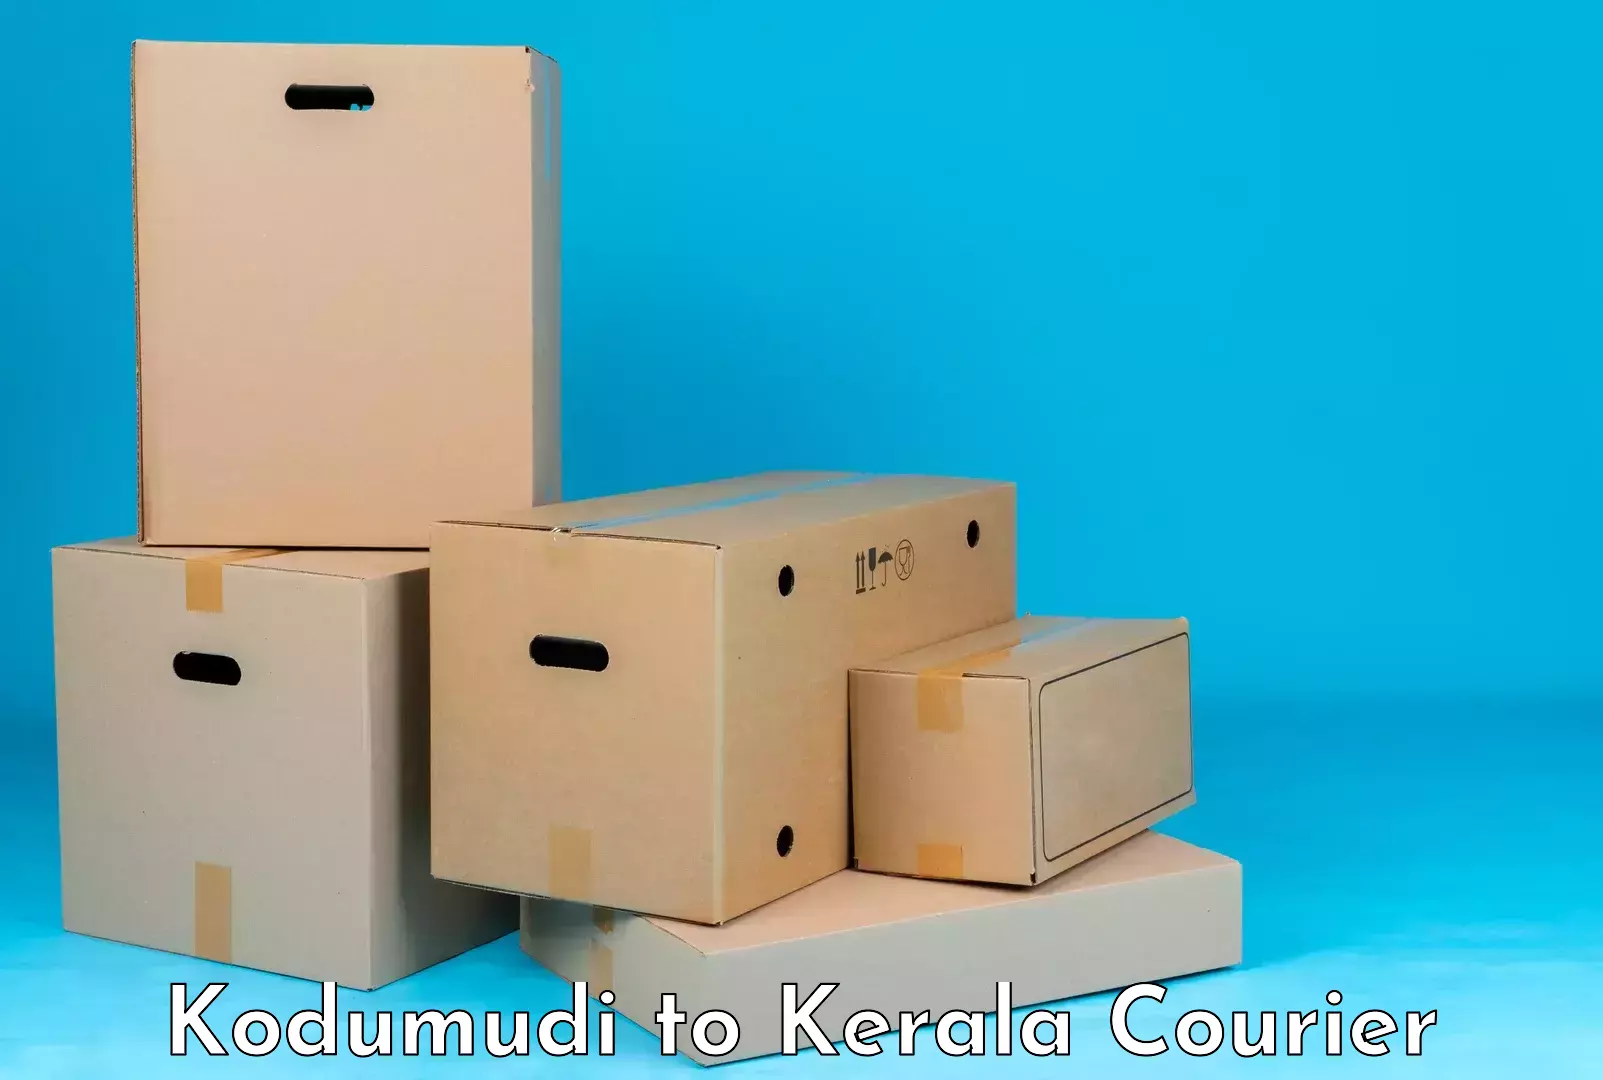 Corporate baggage transport Kodumudi to Kerala